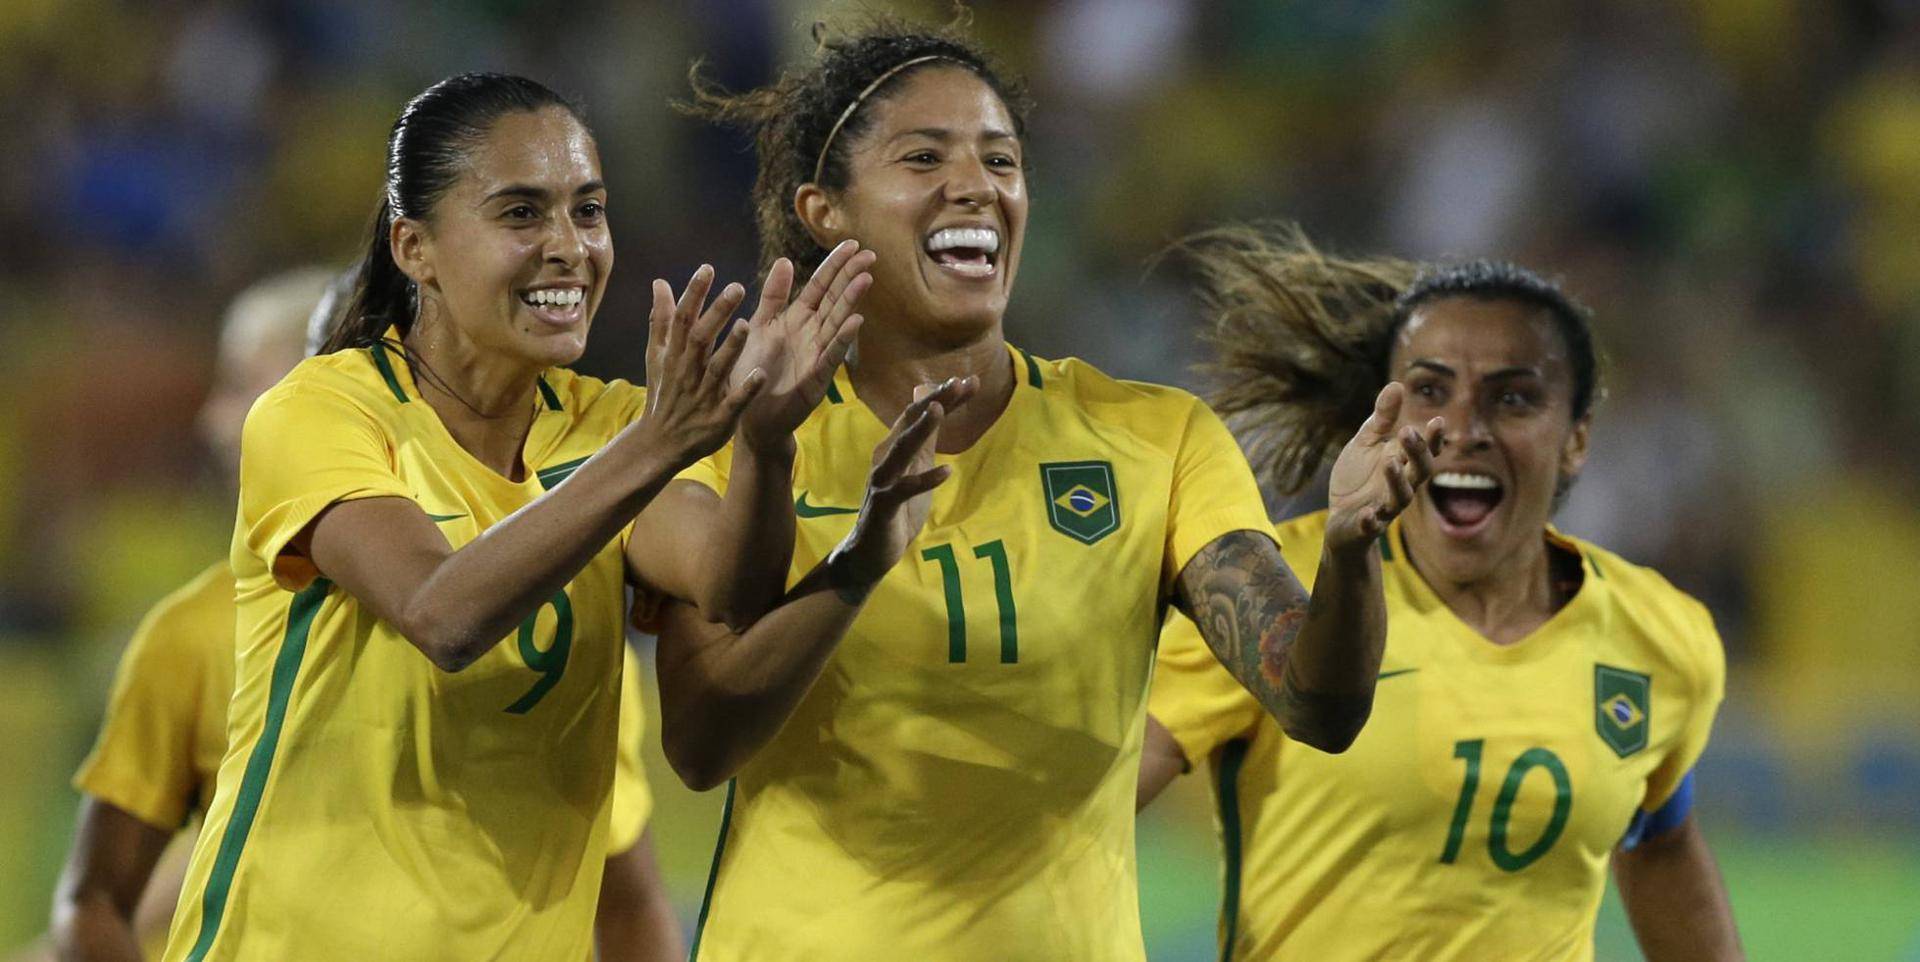 www.juicysantos.com.br - futebol é coisa de mulher